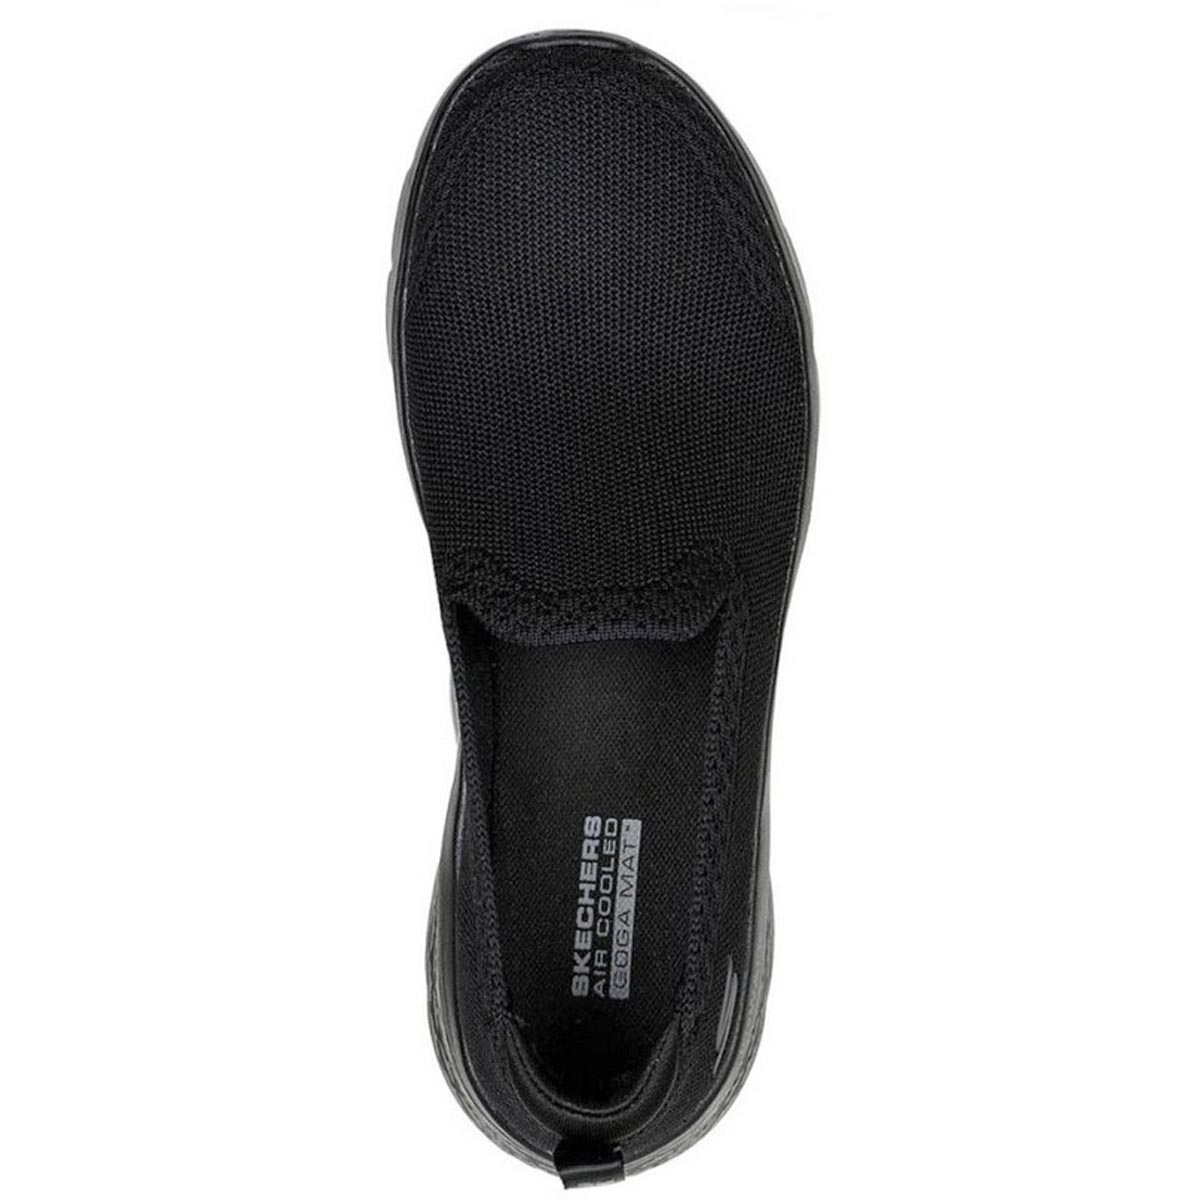 Skechers GO WALK FLEX Preto - Sapatos Sapatilhas Mulher 115,00 €